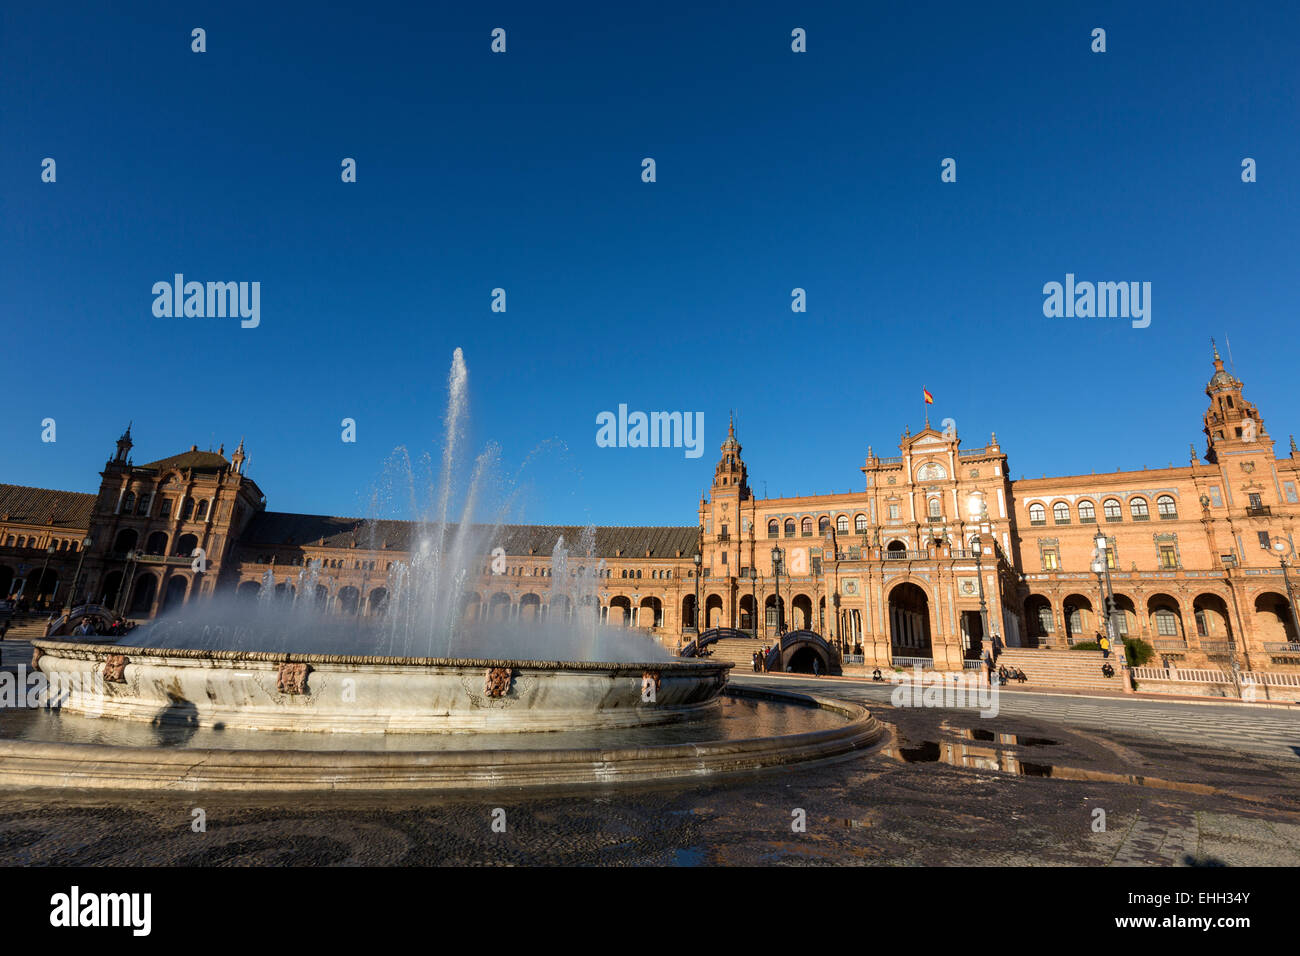 Die Plaza de España, Spanien Platz ist eine Plaza befindet sich im Parque de María Luisa (Maria Luisa Park), in Sevilla. Stockfoto